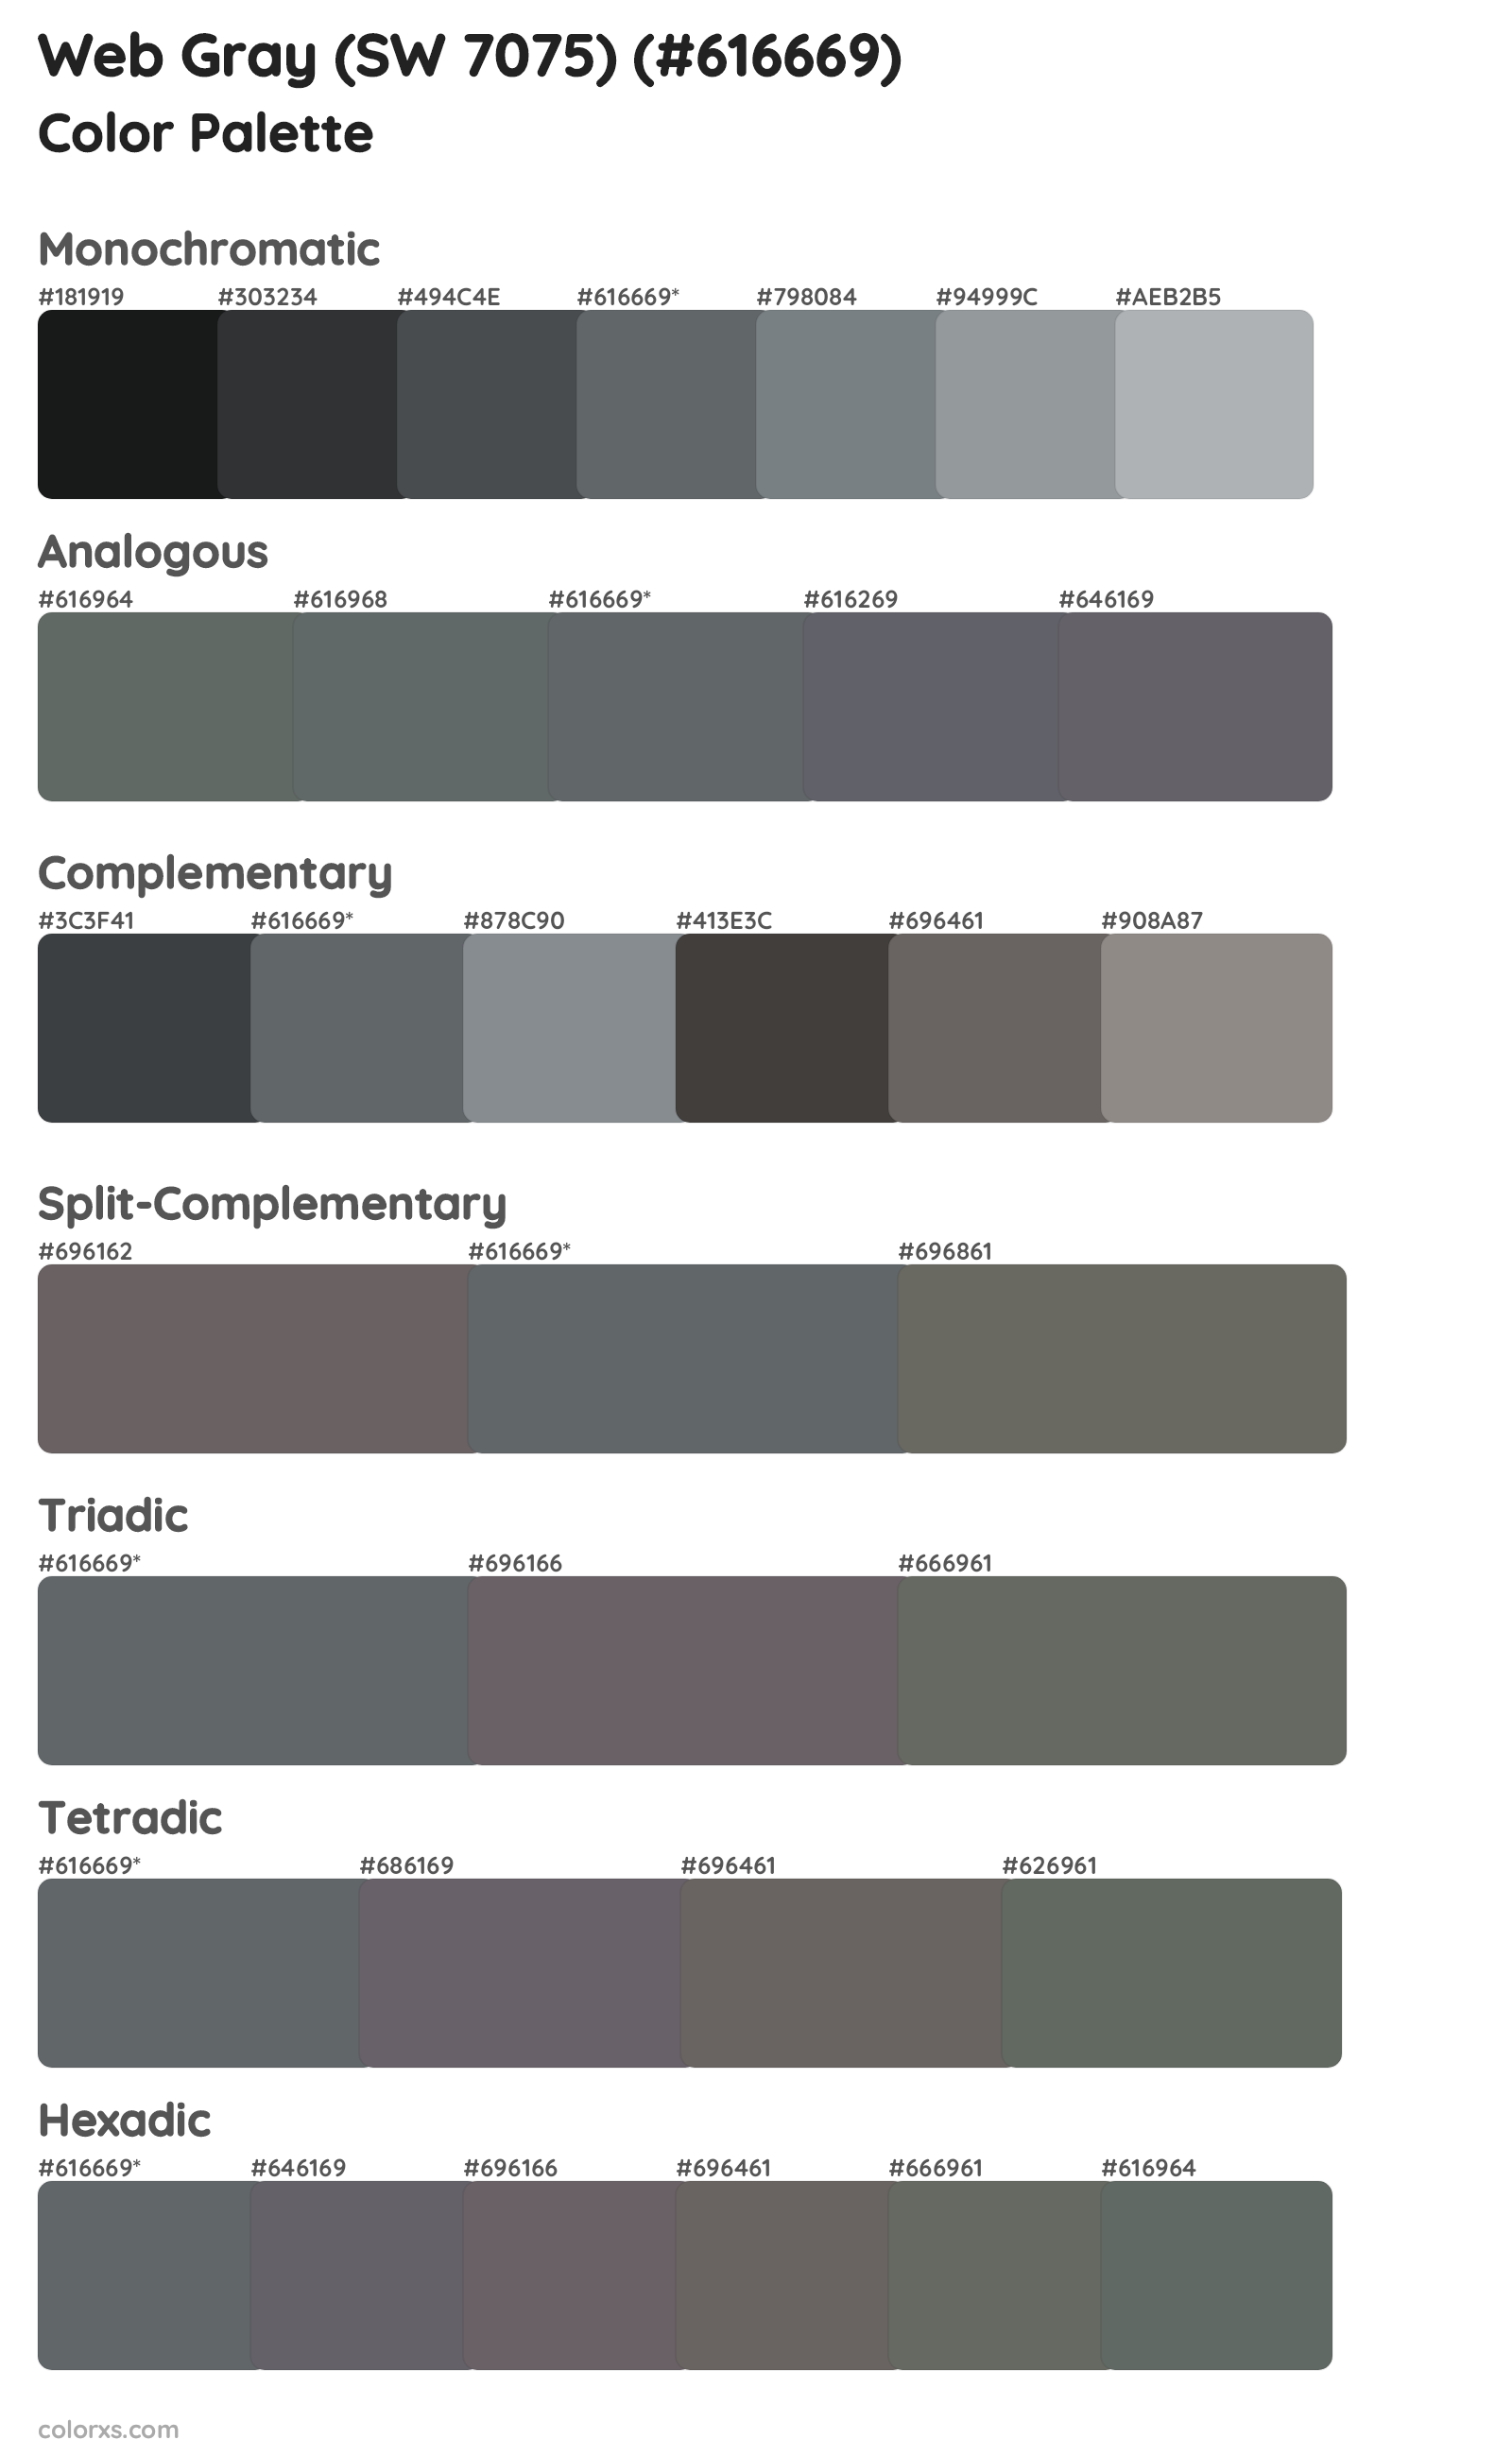 Web Gray (SW 7075) Color Scheme Palettes